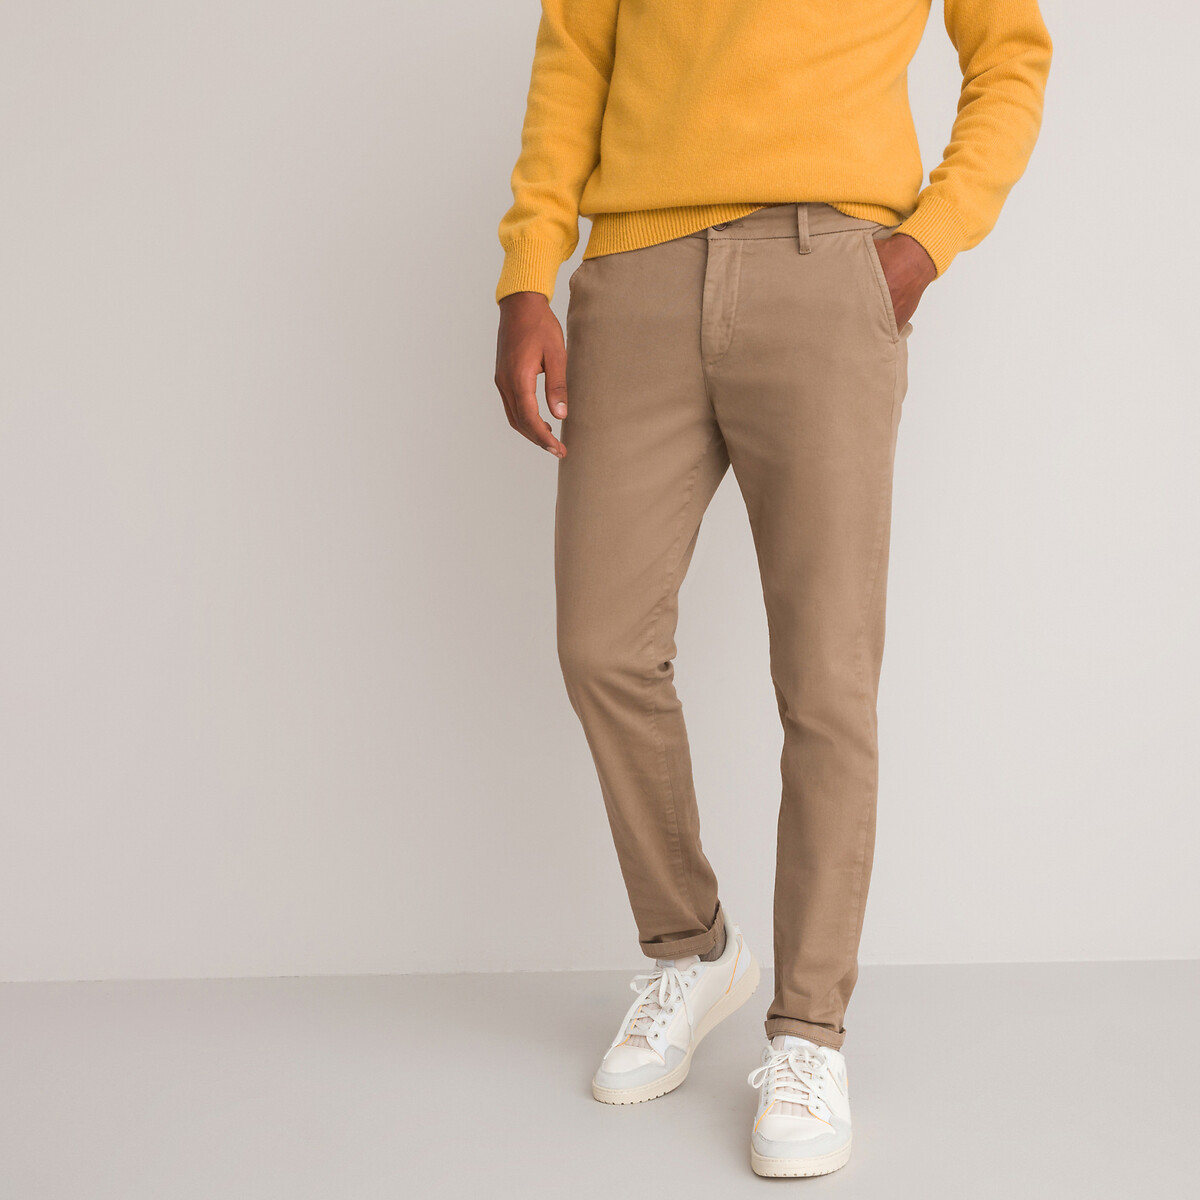 La Redoute Homme Vêtements Pantalons & Jeans Pantalons courts Bermudas Bermuda chino léger couleur regular fit taille moyenne 